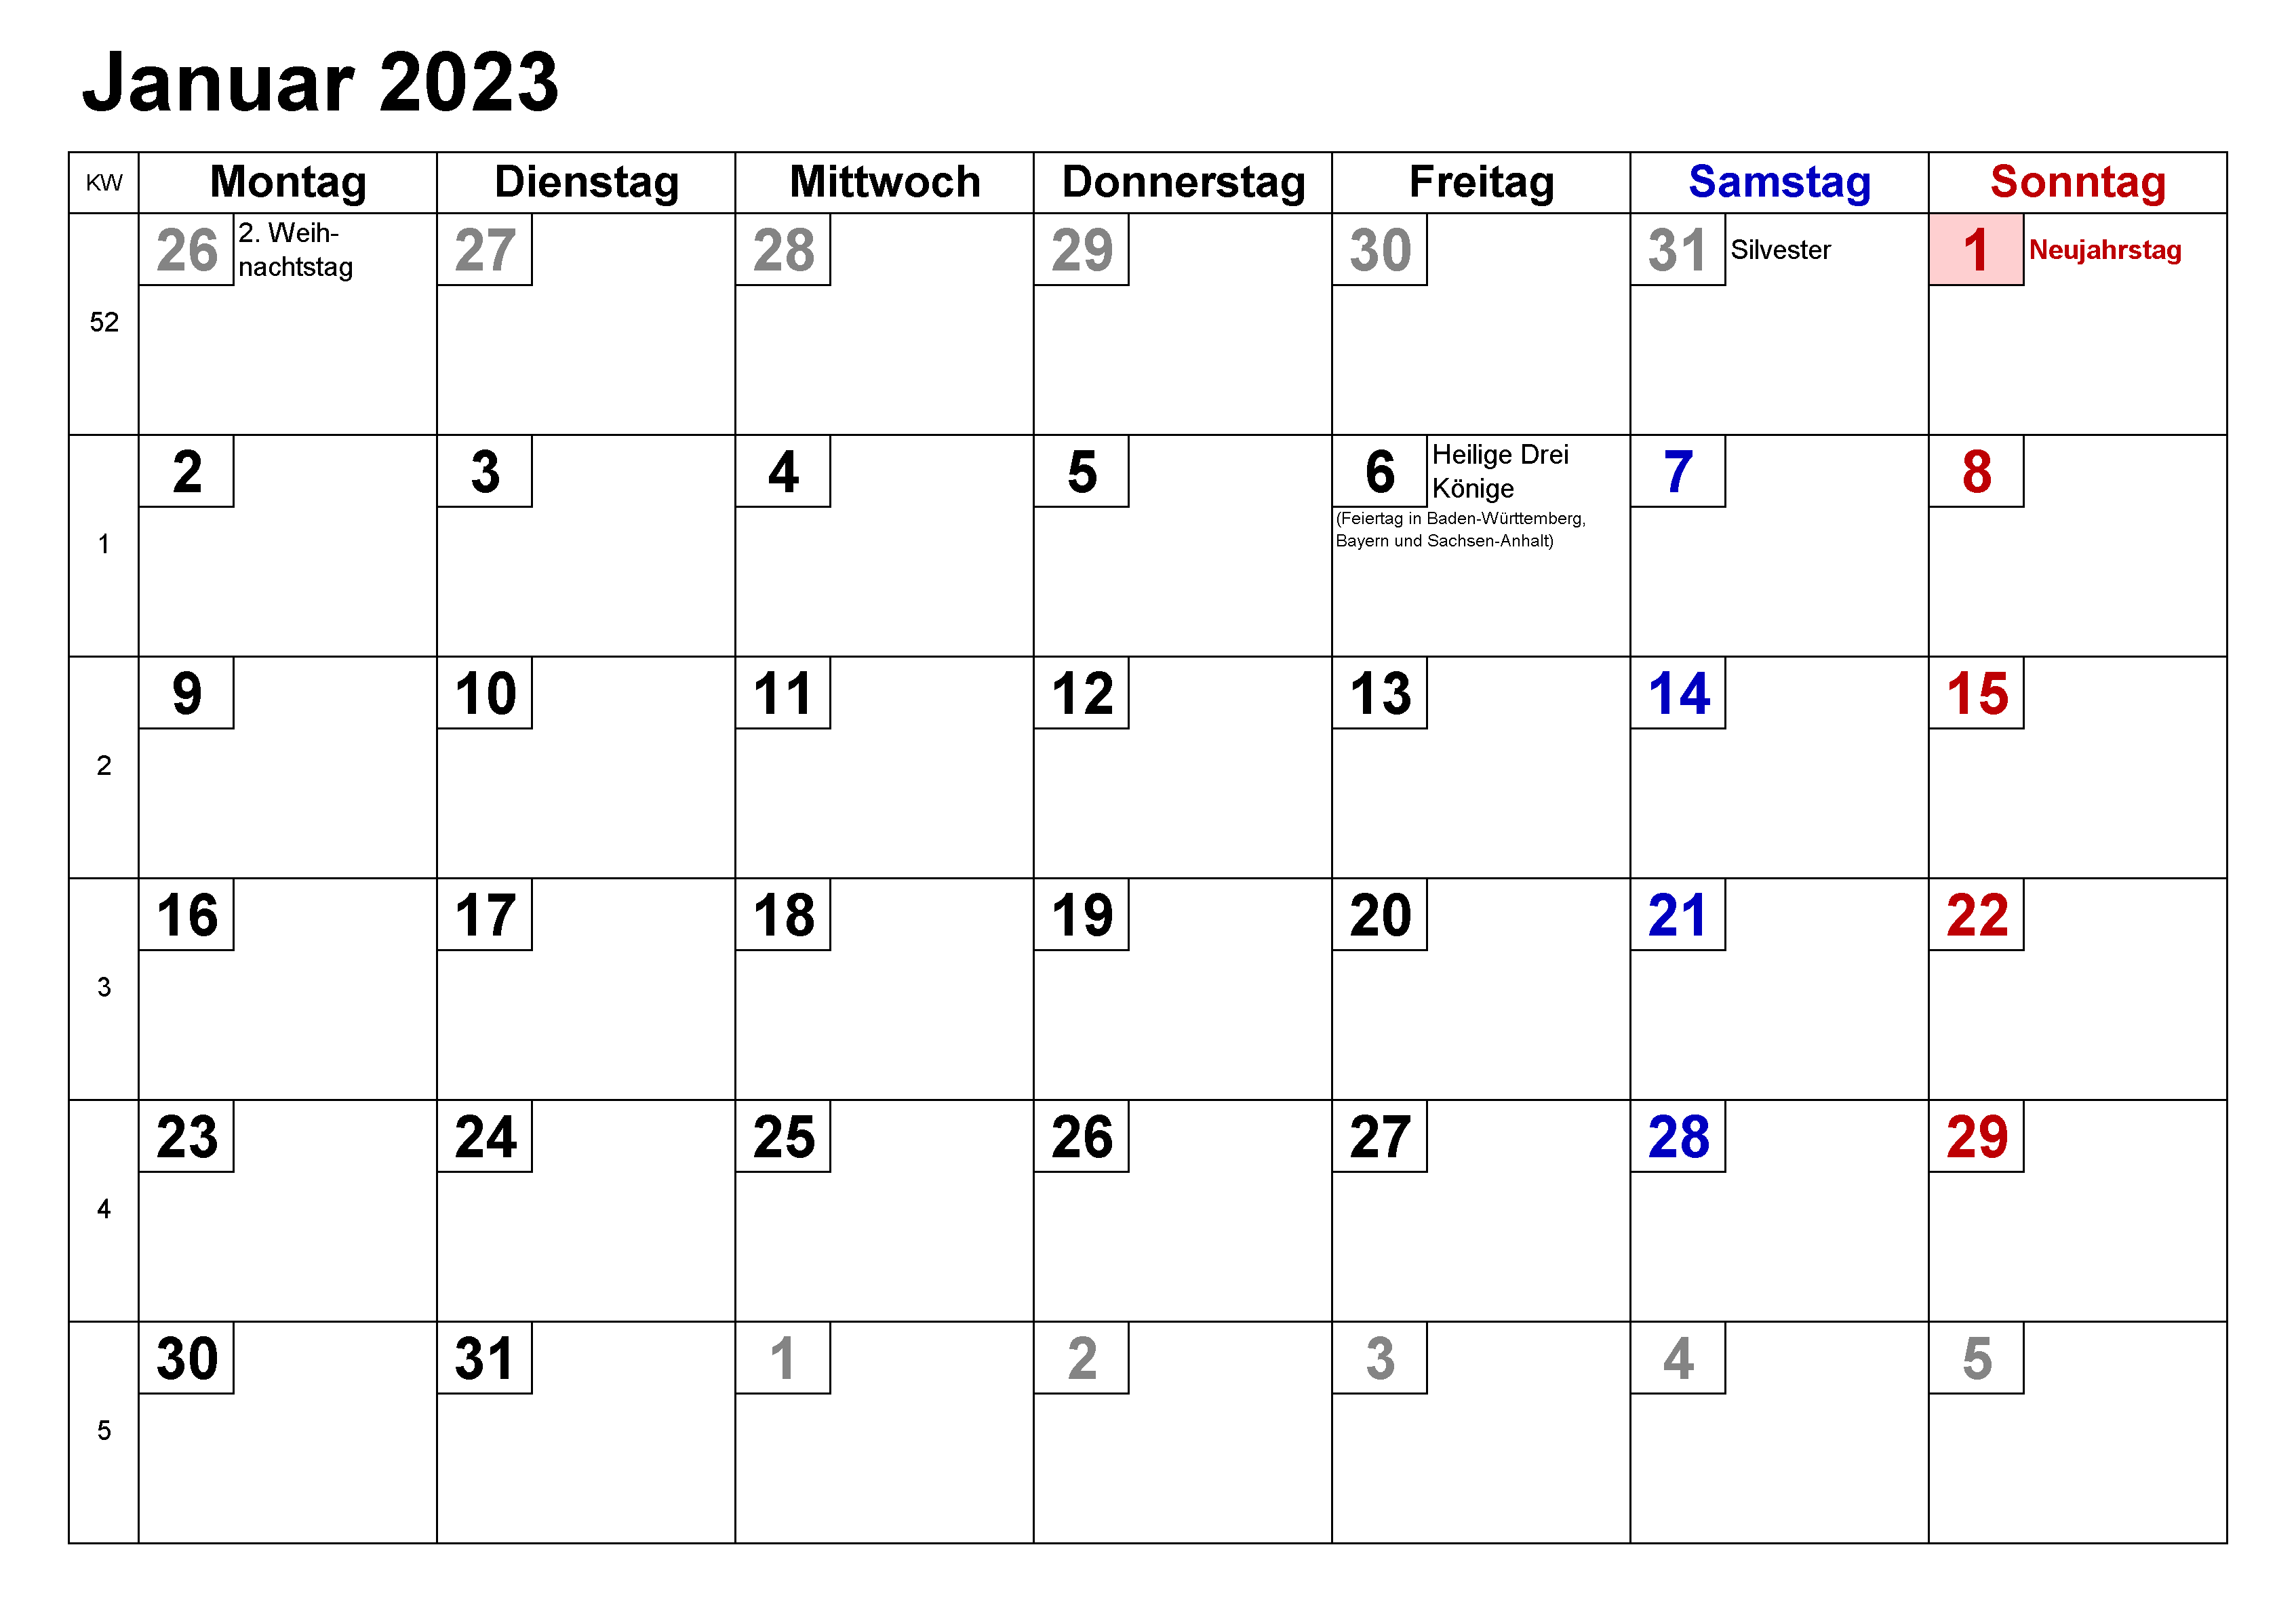 Januar 2023 Kalender PDF